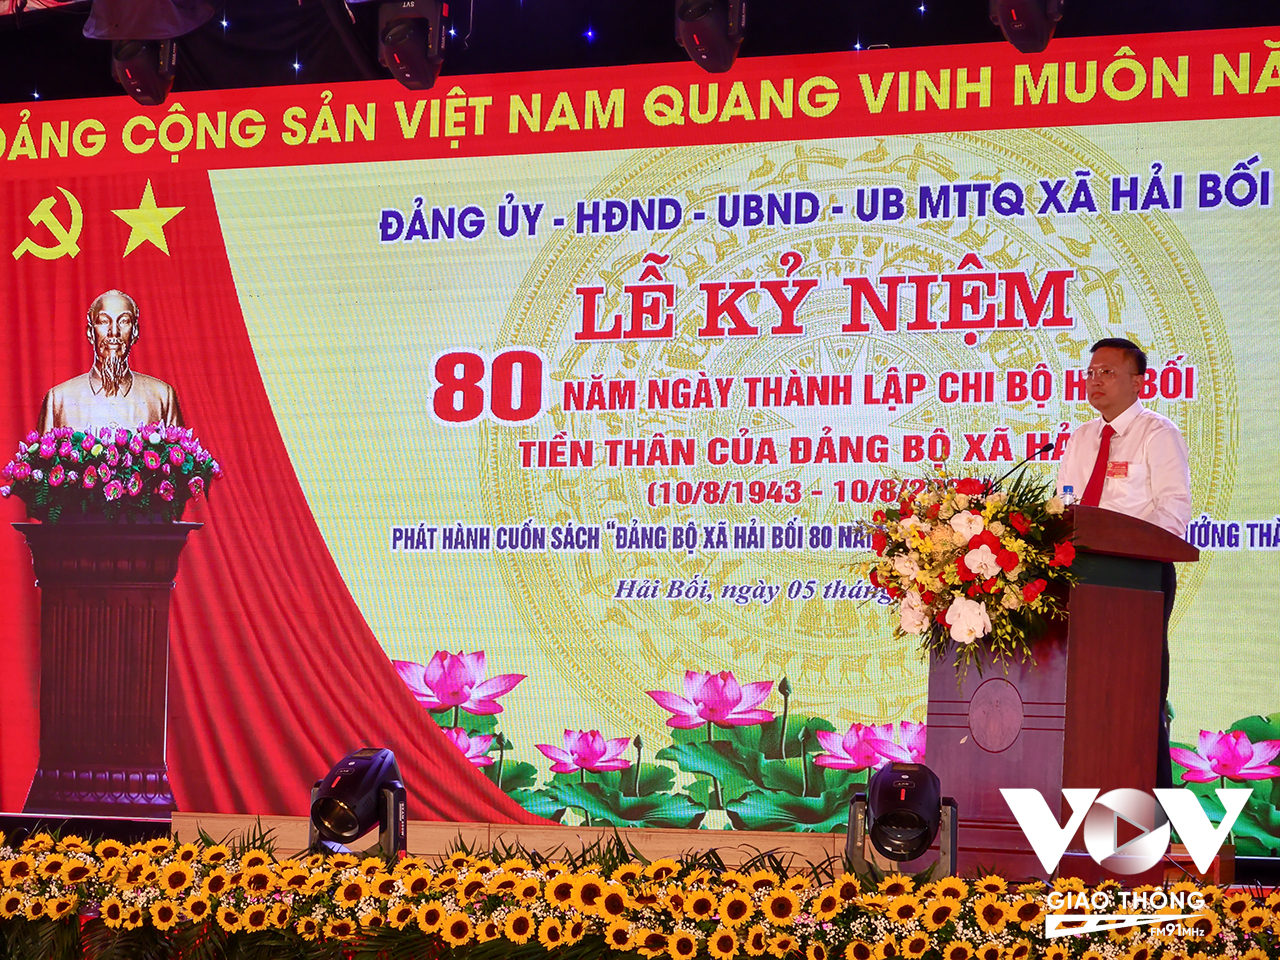 Ông Nguyễn Hữu Thụ, Phó Bí thư thường trực Đảng uỷ xã Hải Bối giới thiệu cuốn sách kỷ niệm 80 năm Đảng bộ Hải Bối